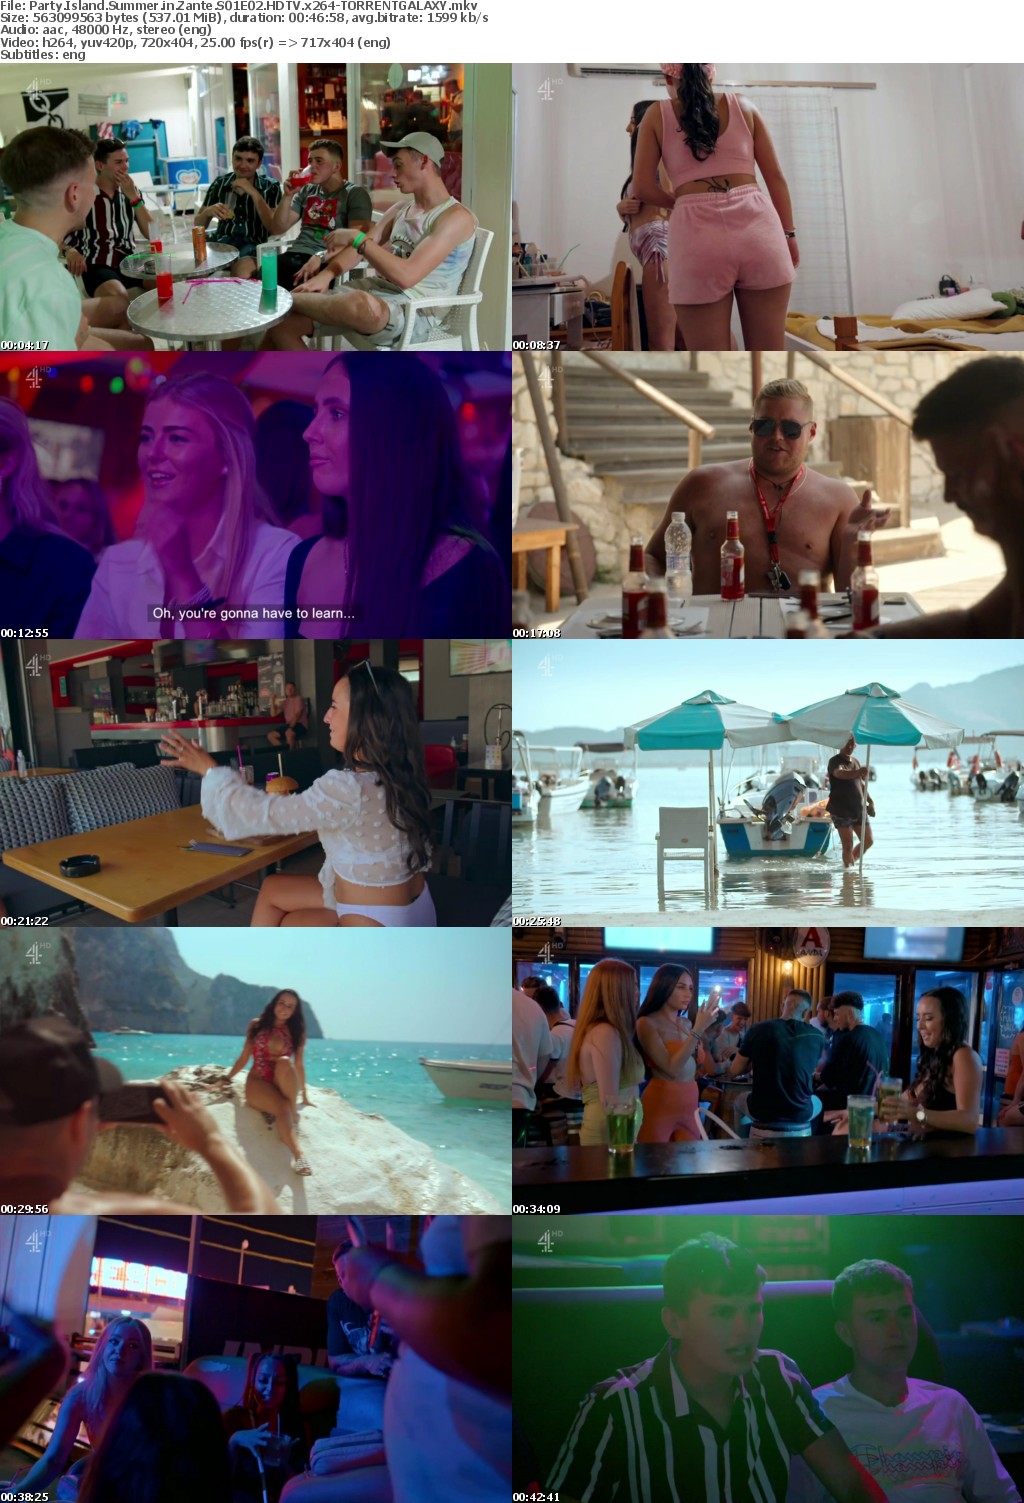 Party Island Summer in Zante S01E02 HDTV x264-GALAXY